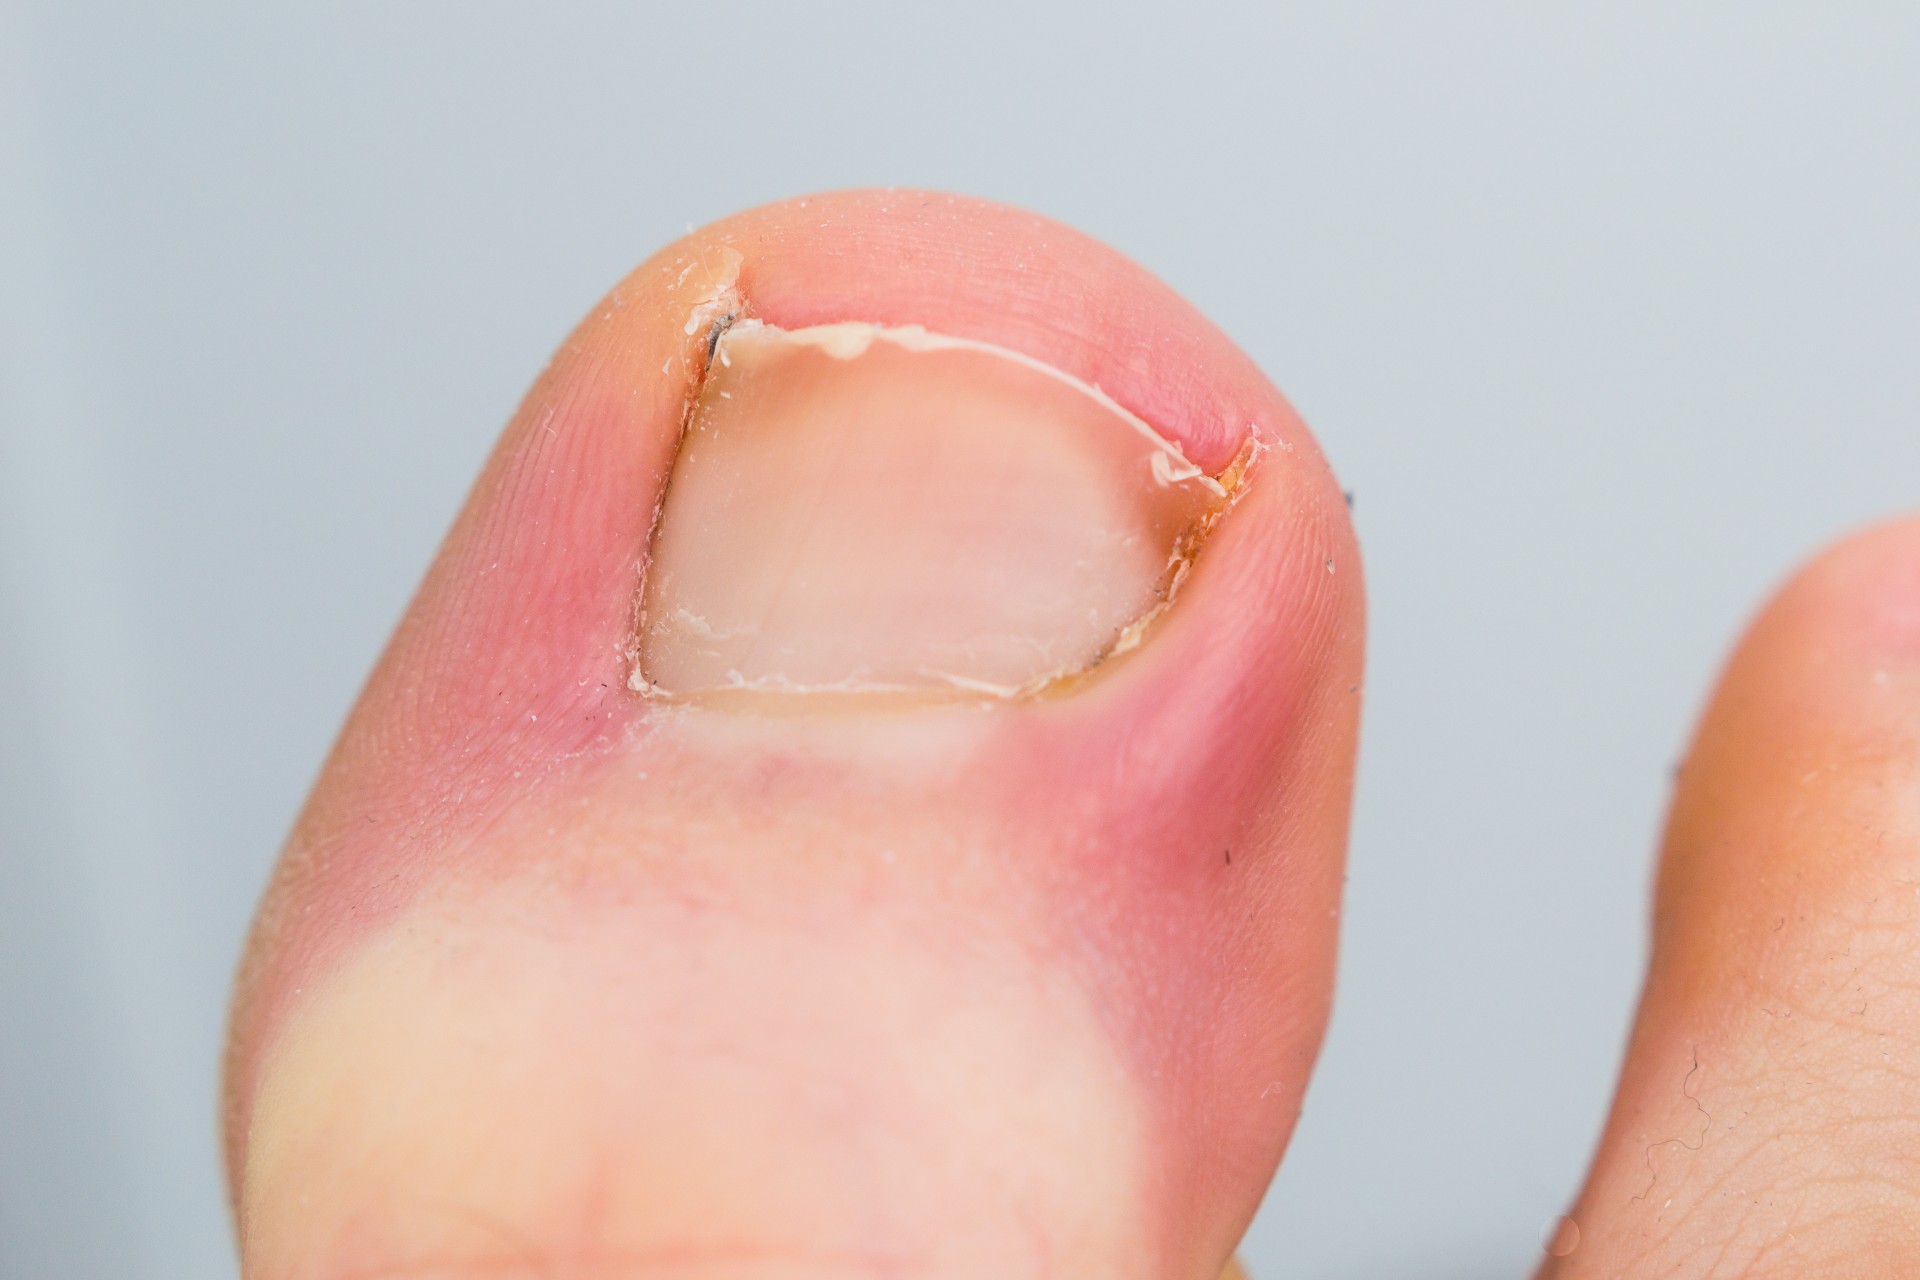 a big toe with an ingrown toenail